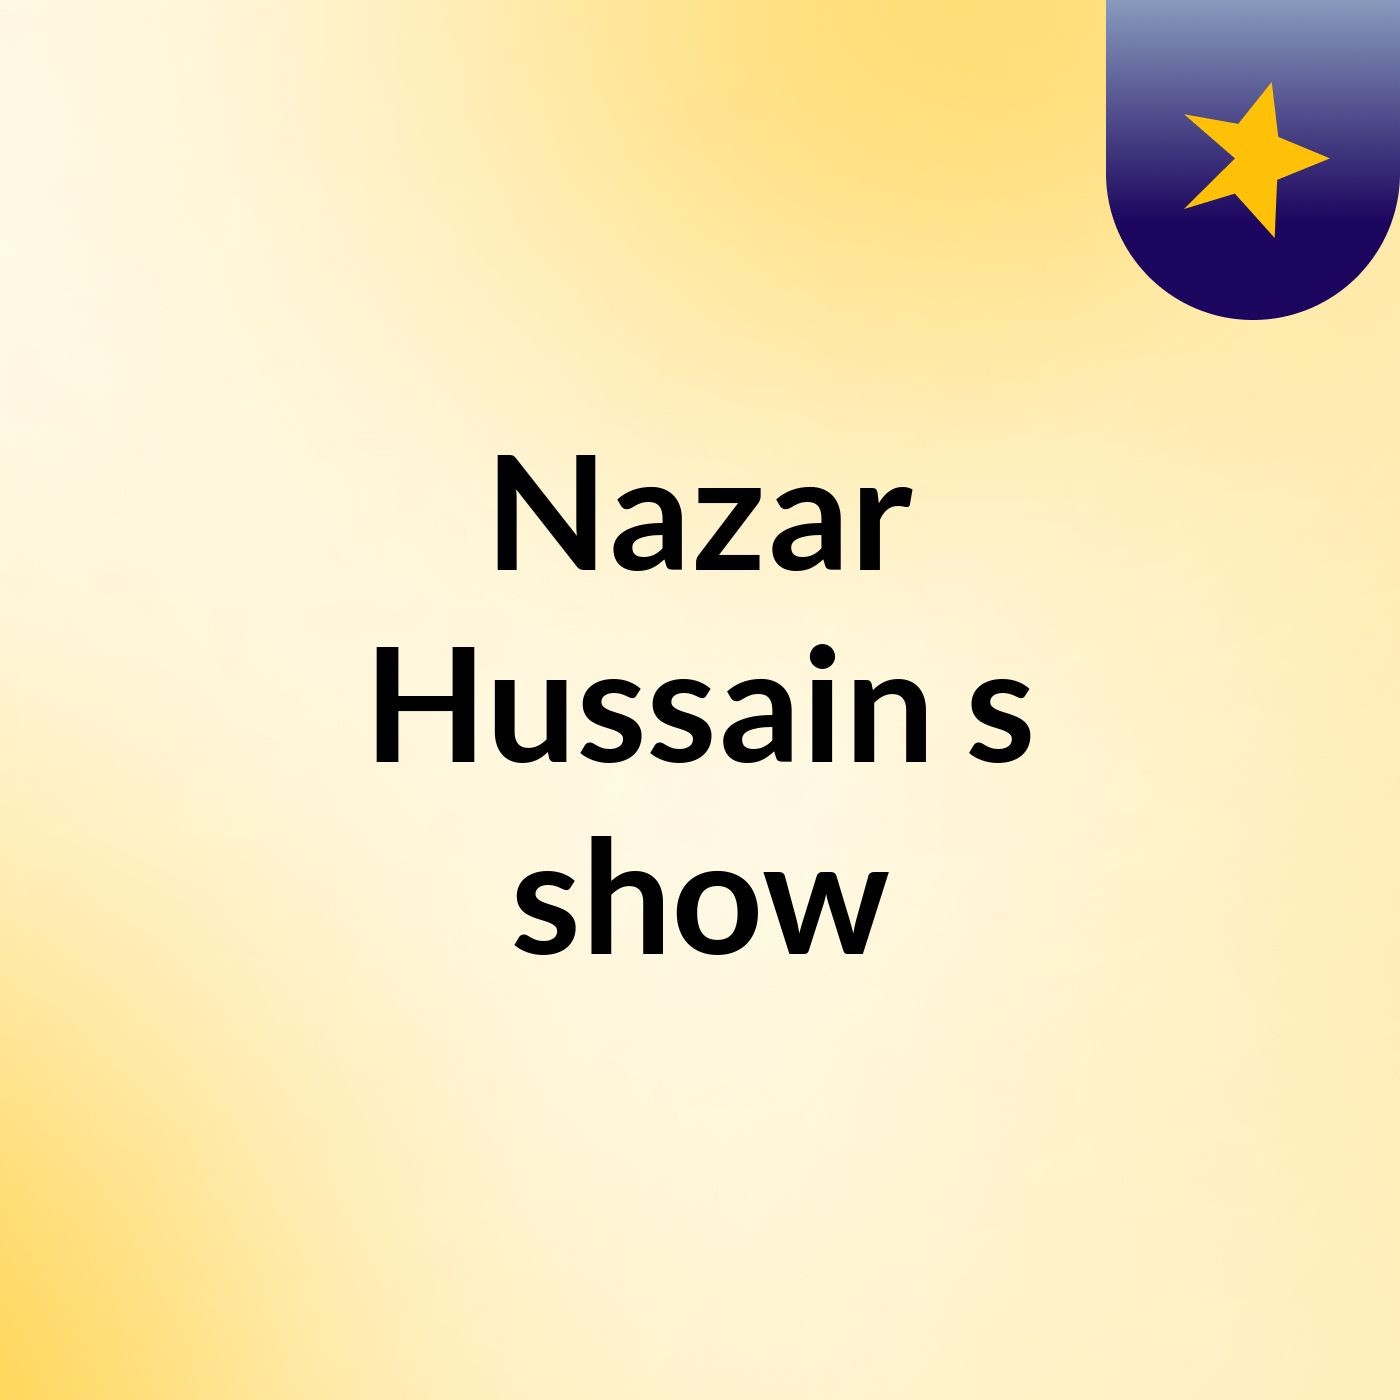 Nazar Hussain's show